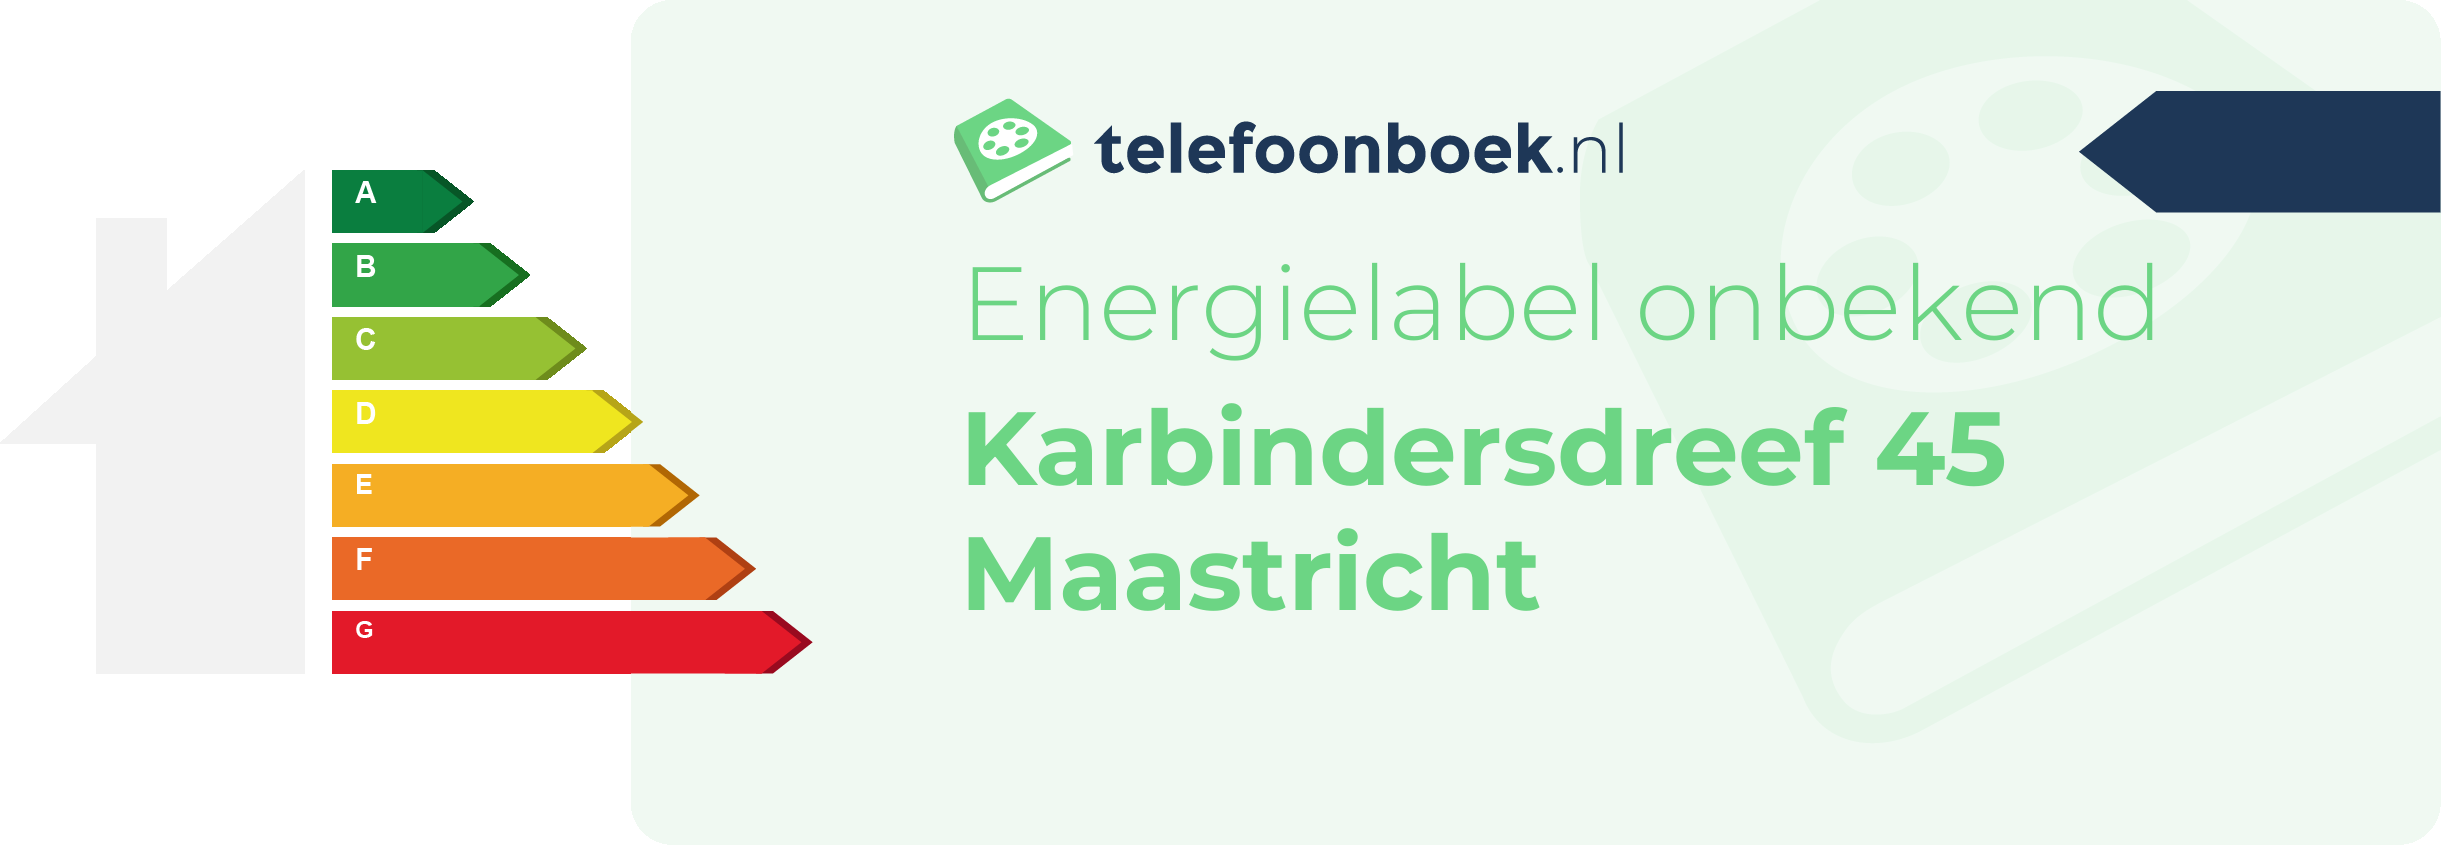 Energielabel Karbindersdreef 45 Maastricht